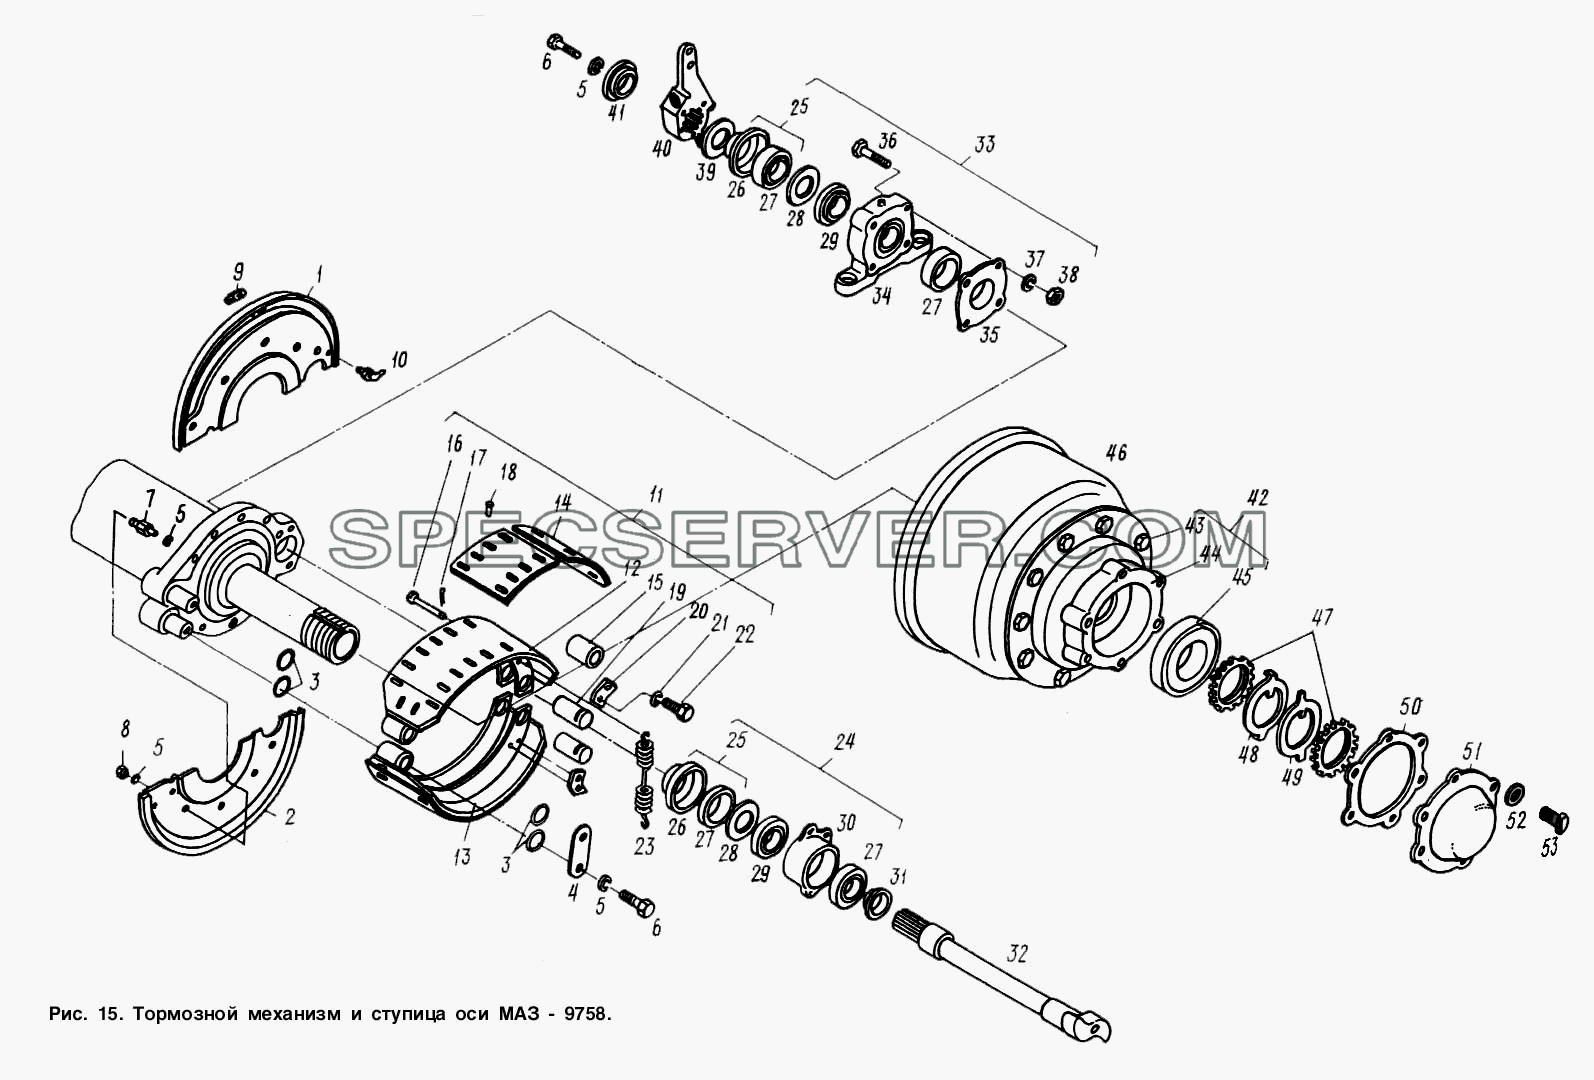 Тормозной механизм и ступица оси МАЗ-9758 для МАЗ-9758-30 (список запасных частей)